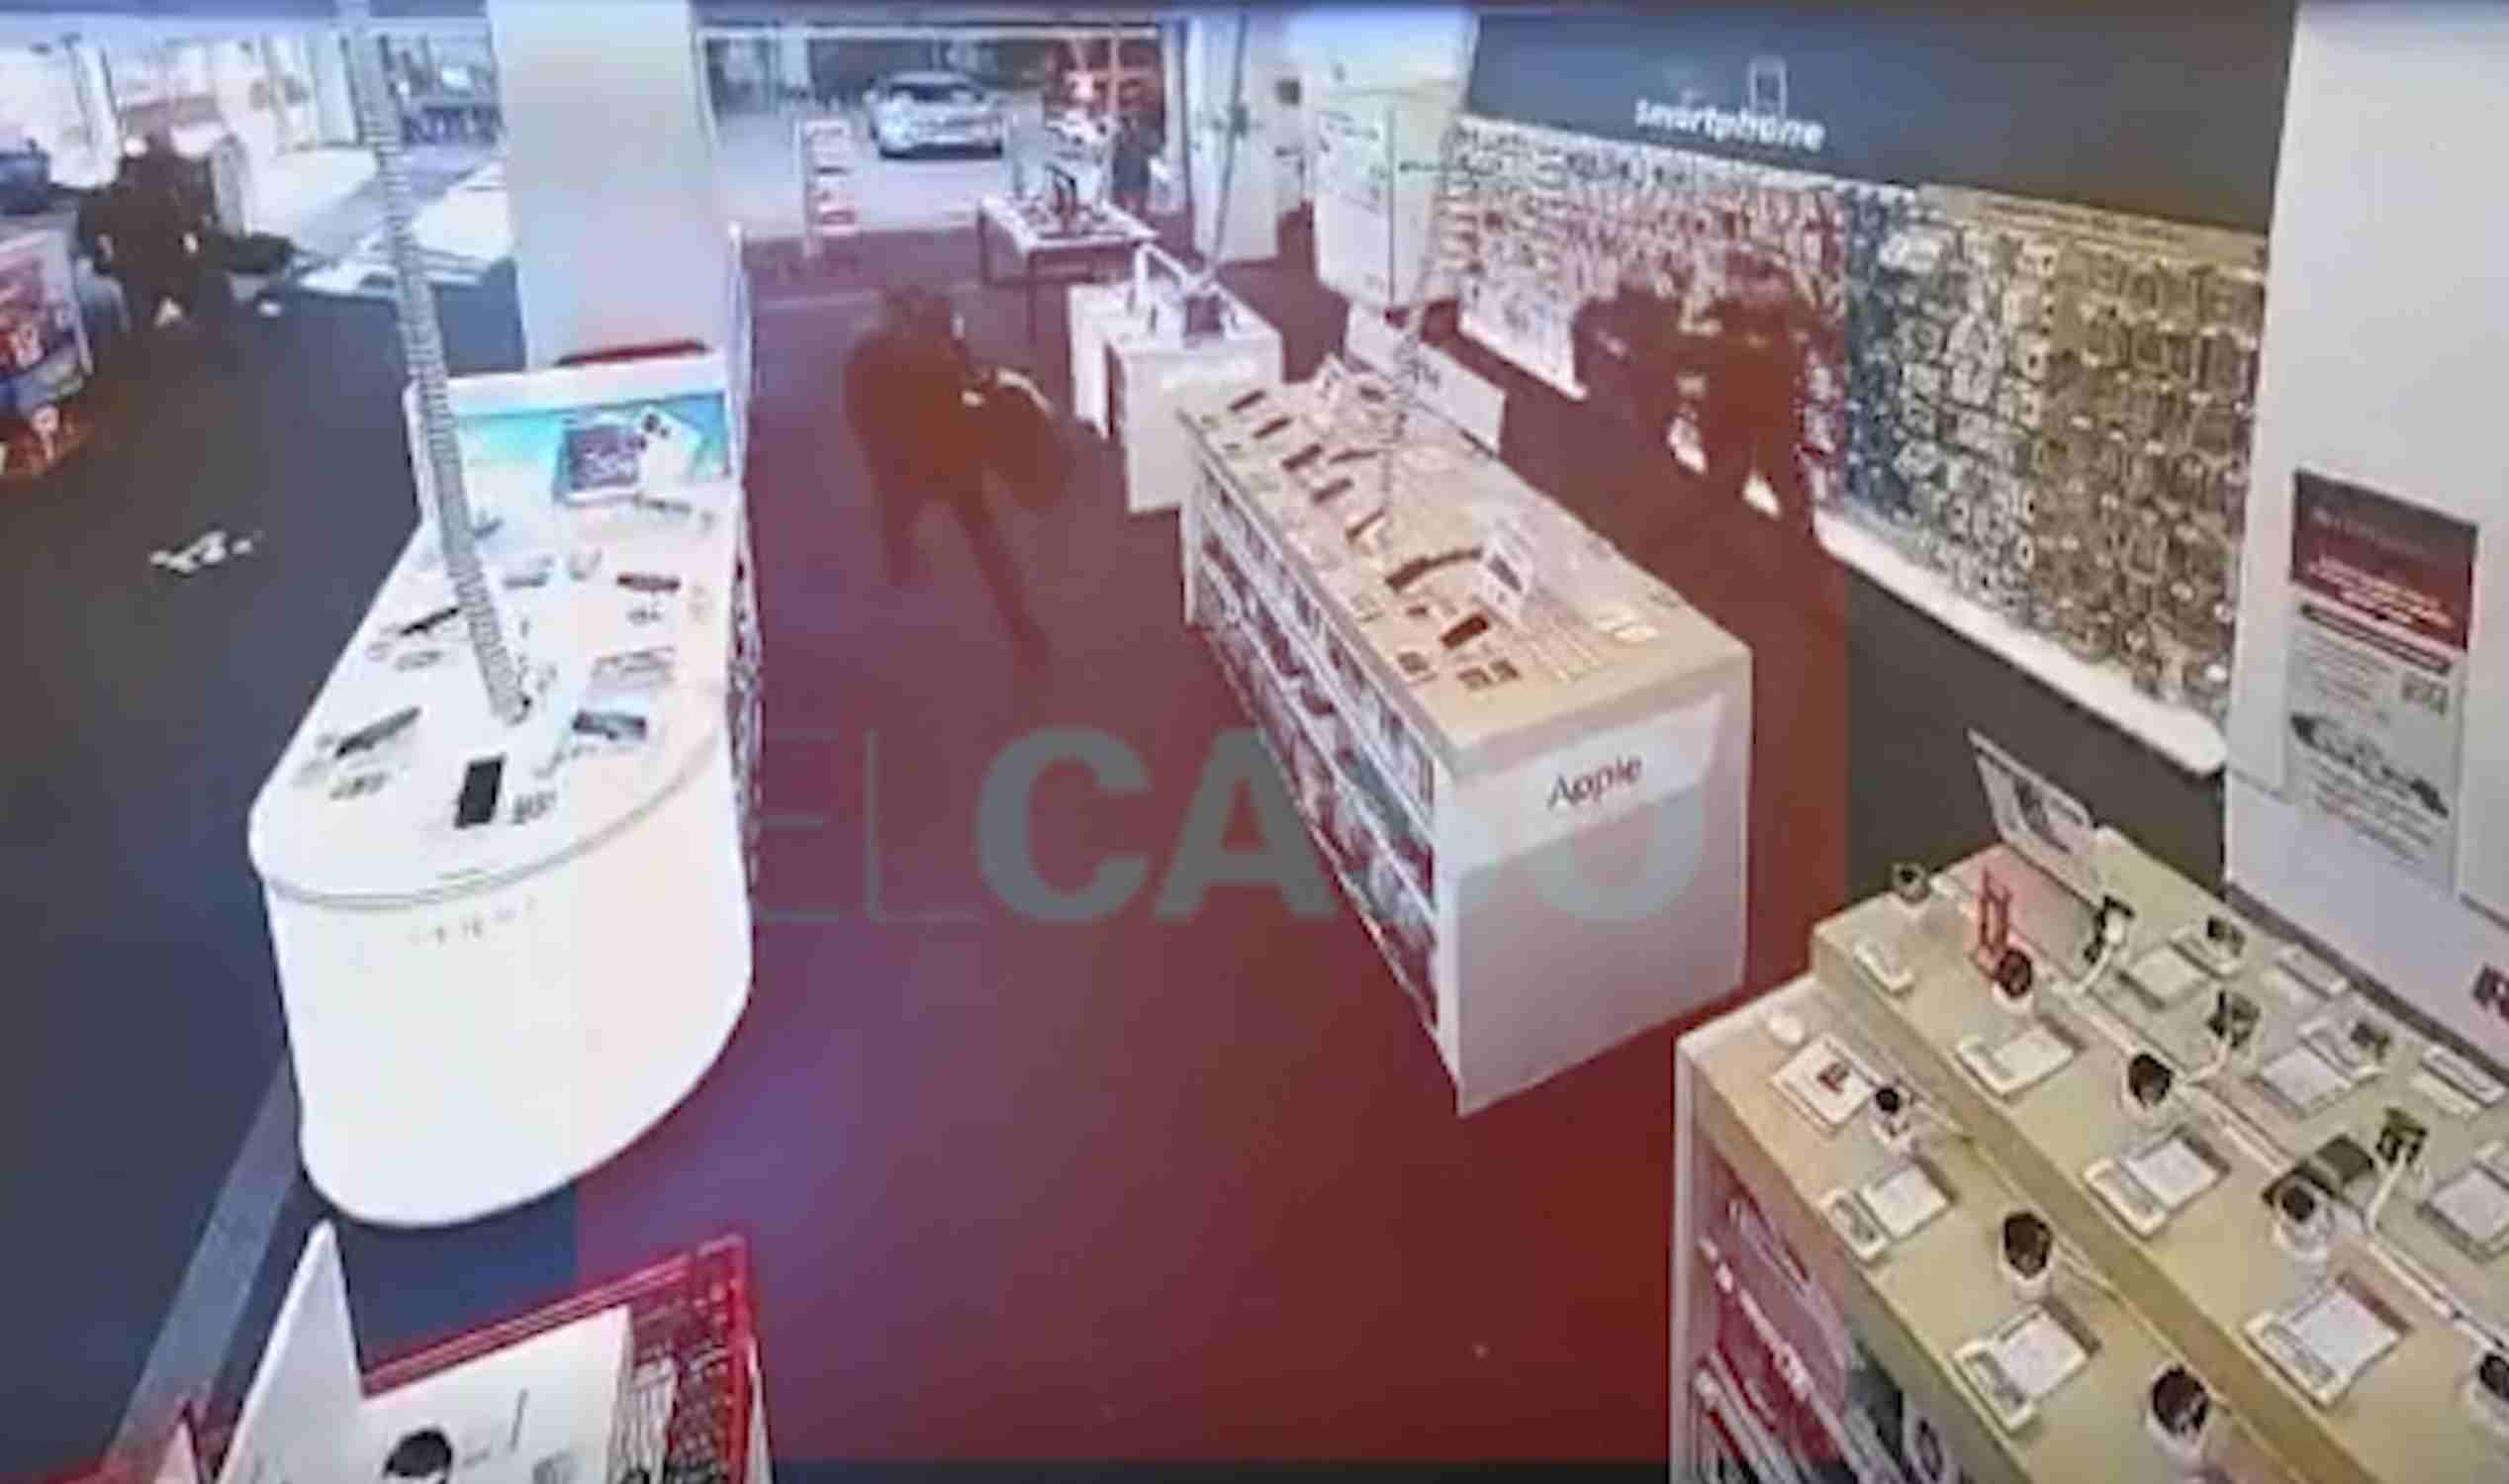 Así fue el violento atraco a punta de pistola en el MediaMarkt de Badalona | VÍDEO